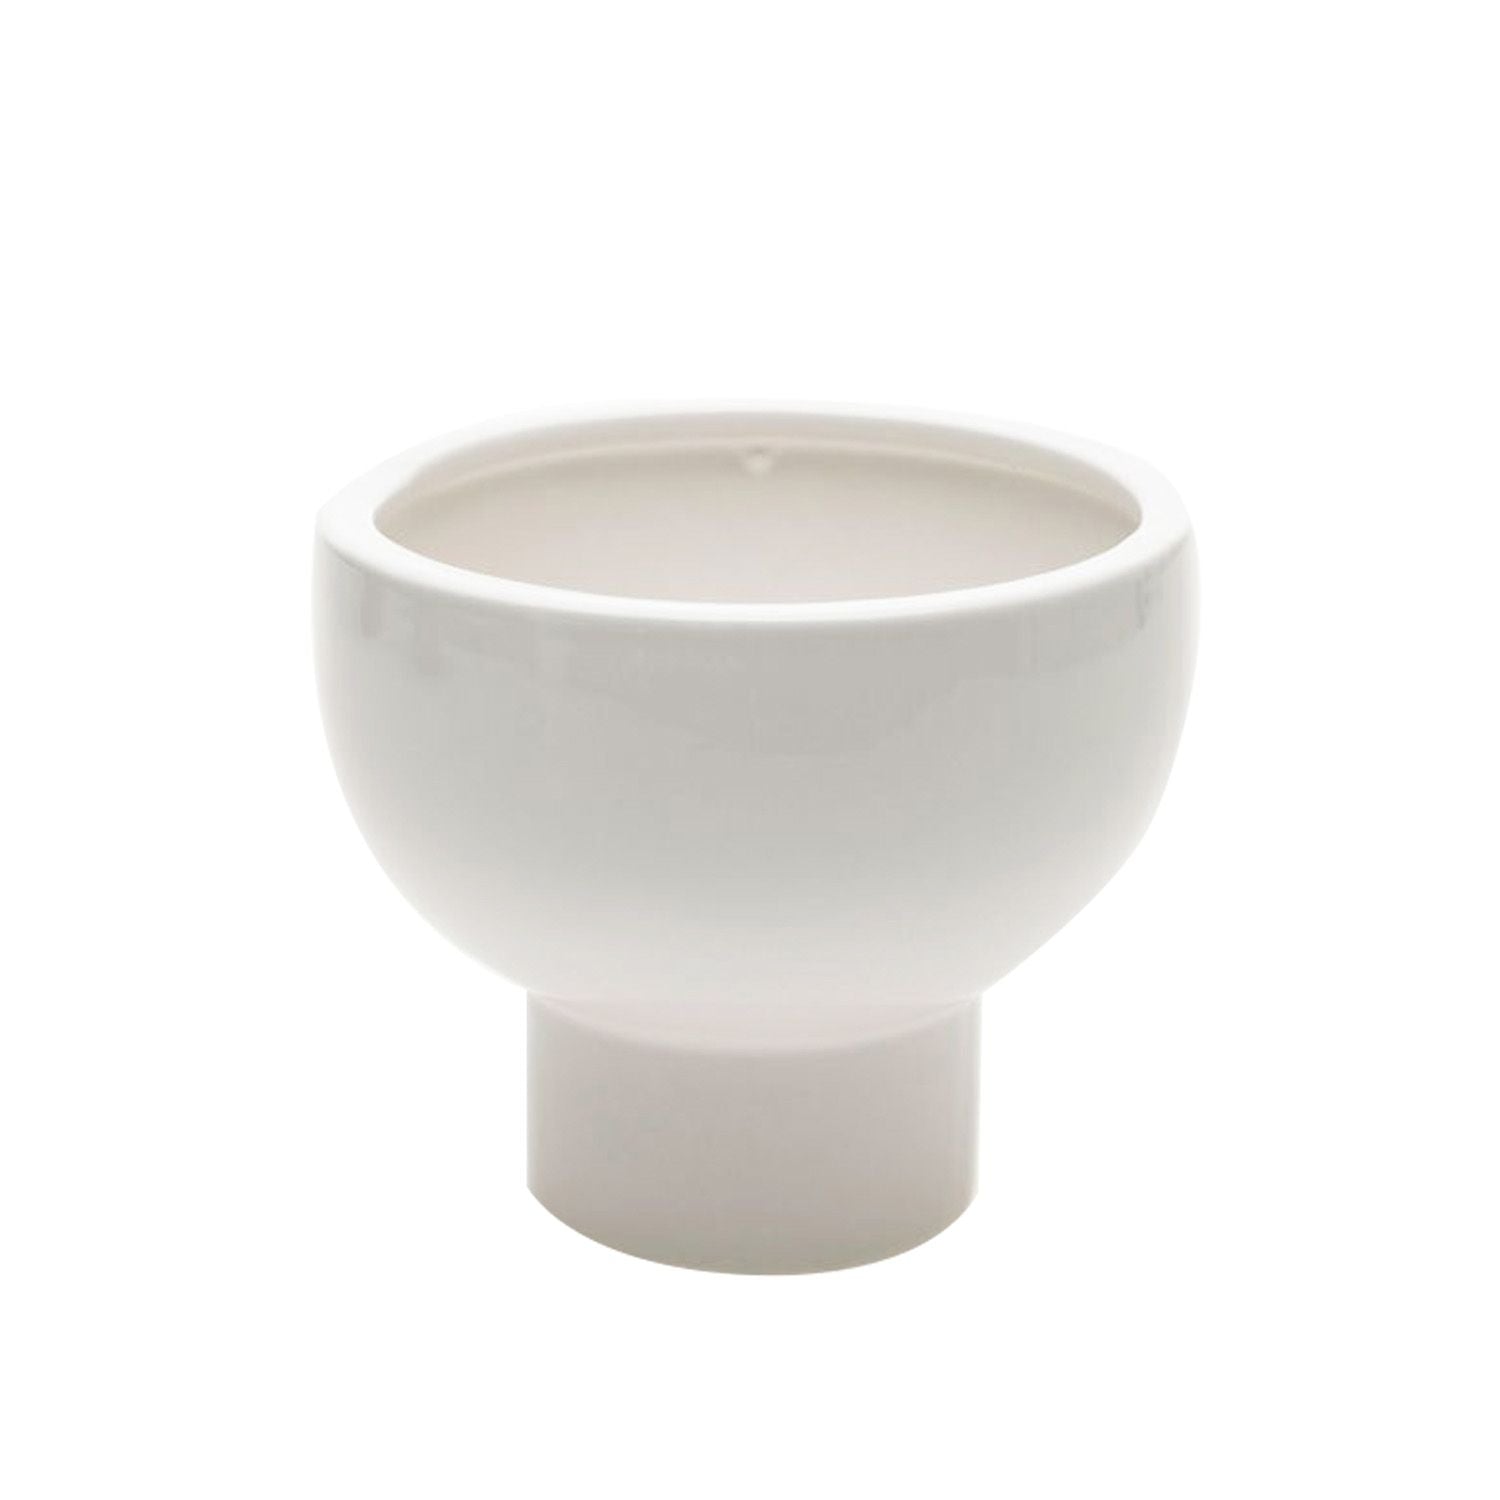 White Ceramic Compote Bowl